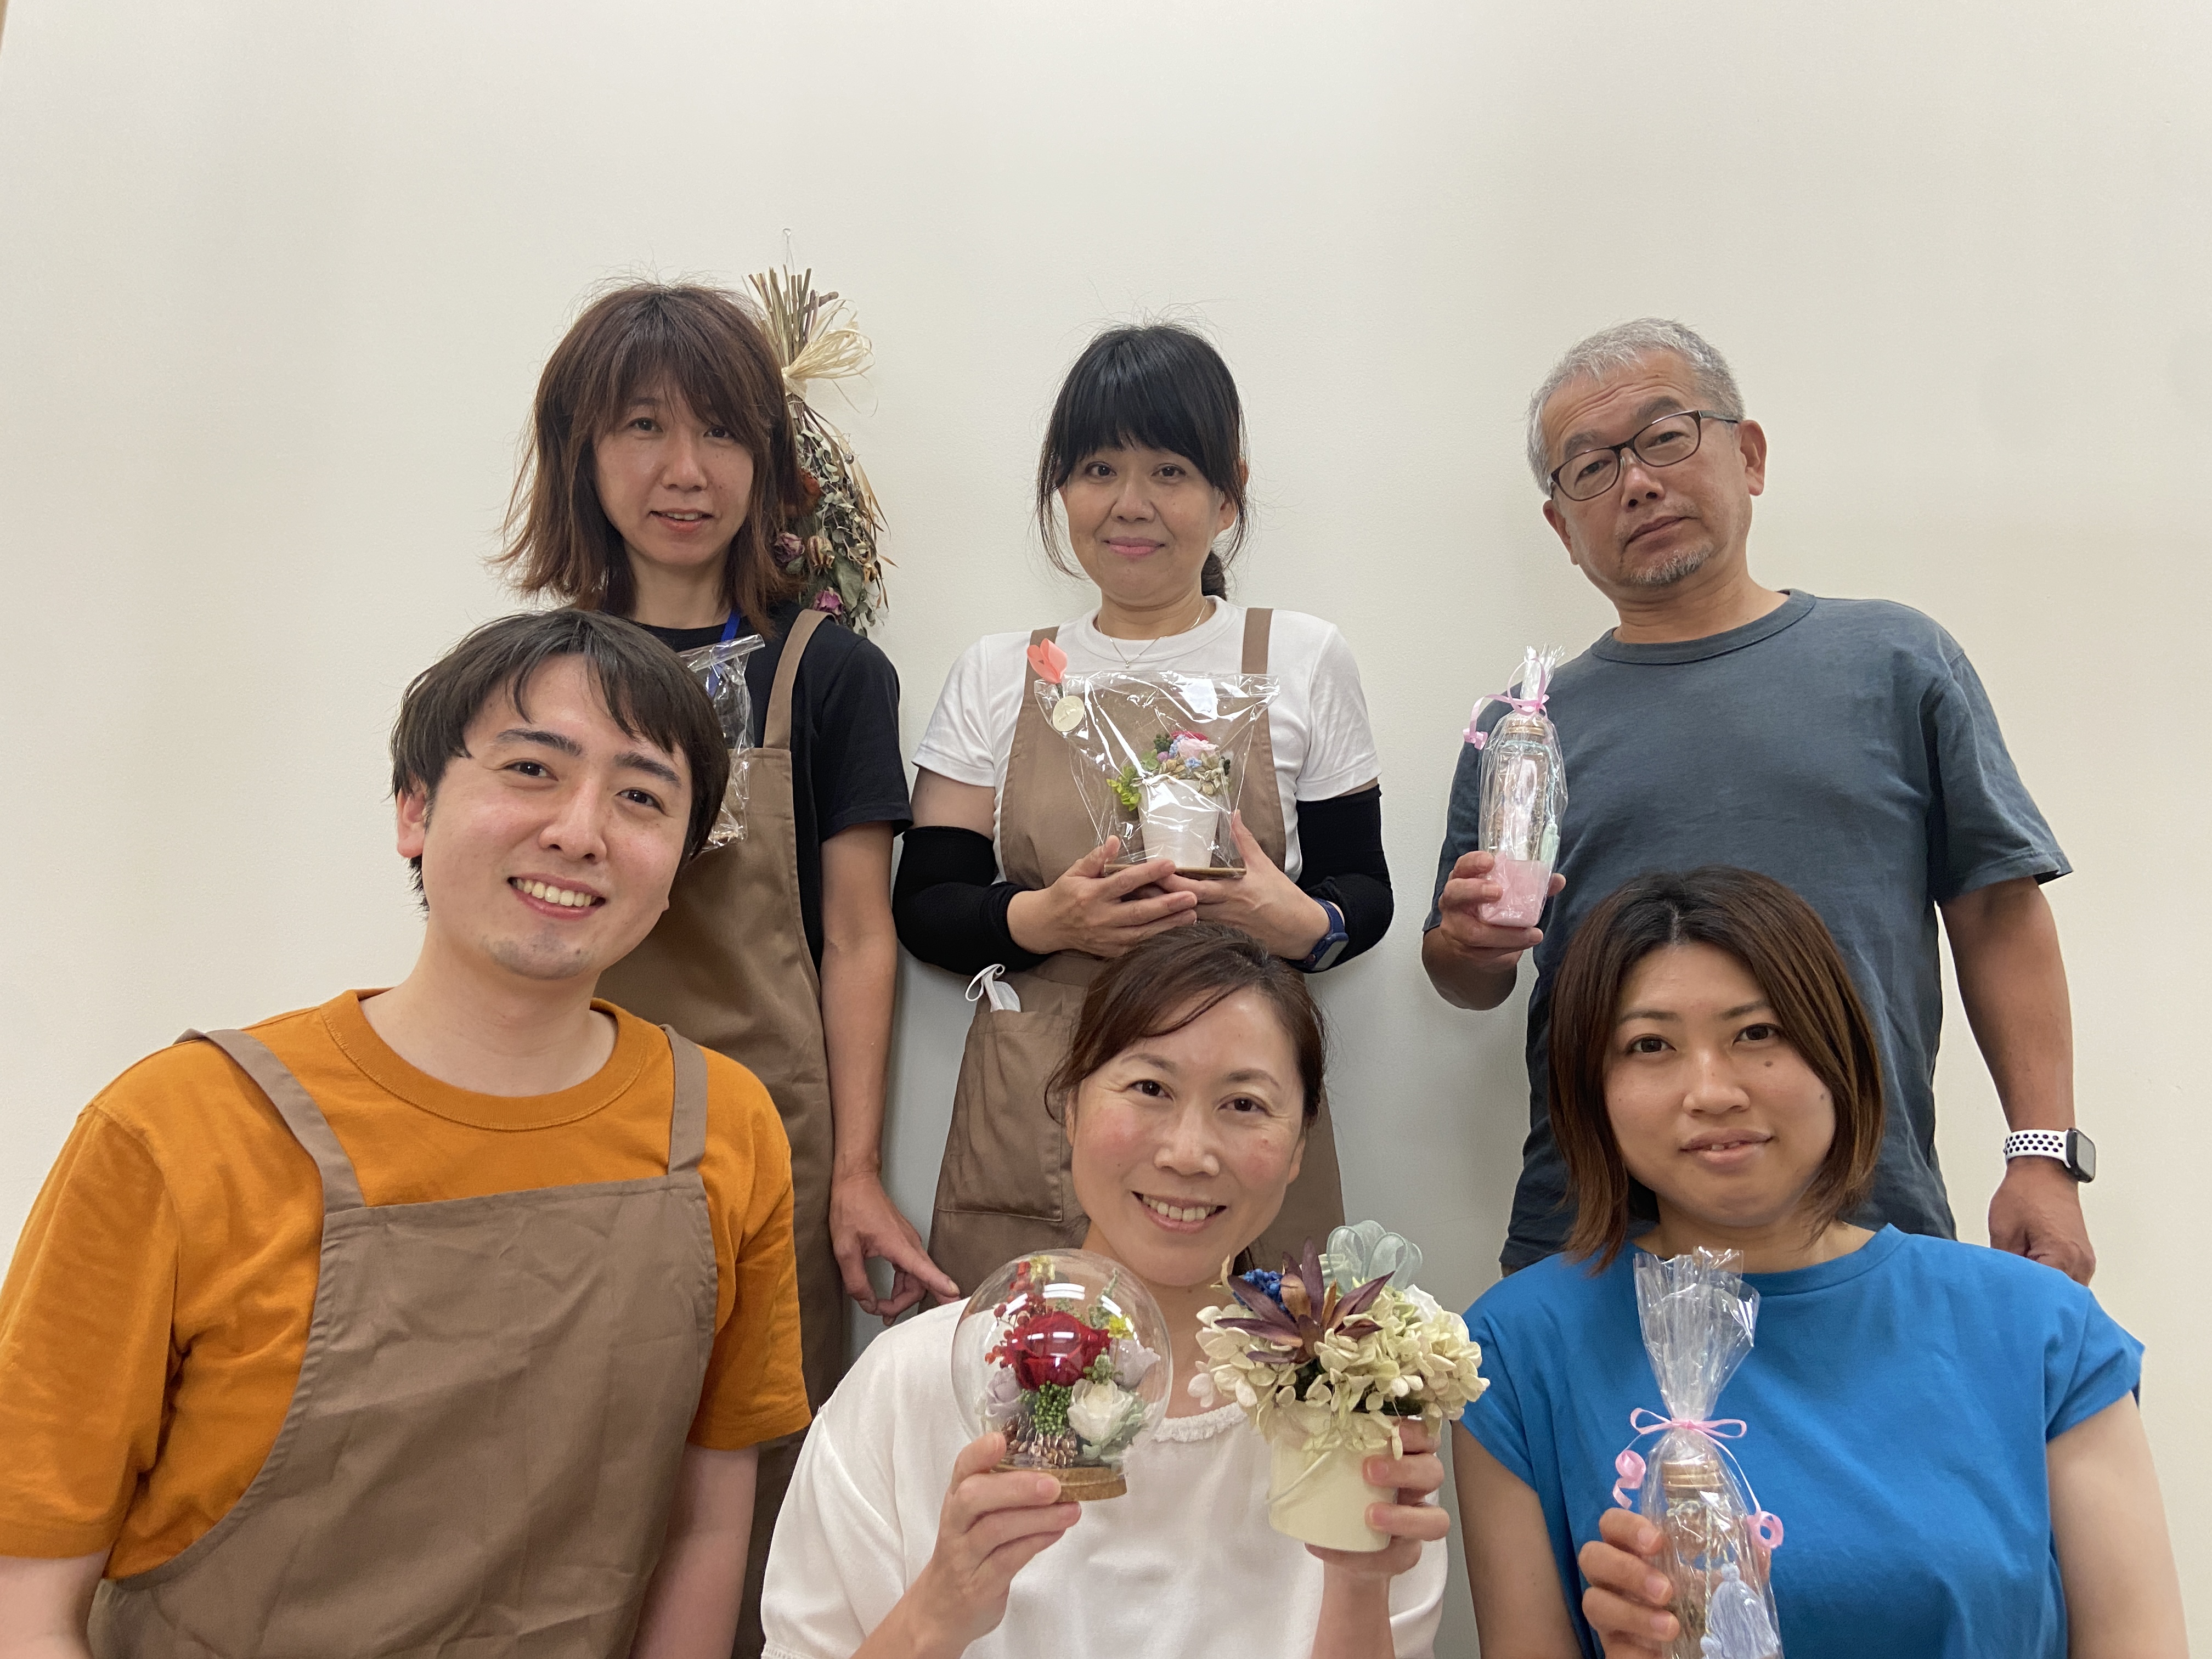 ハートフェルト・フローラル・プロジェクト with ikuasu